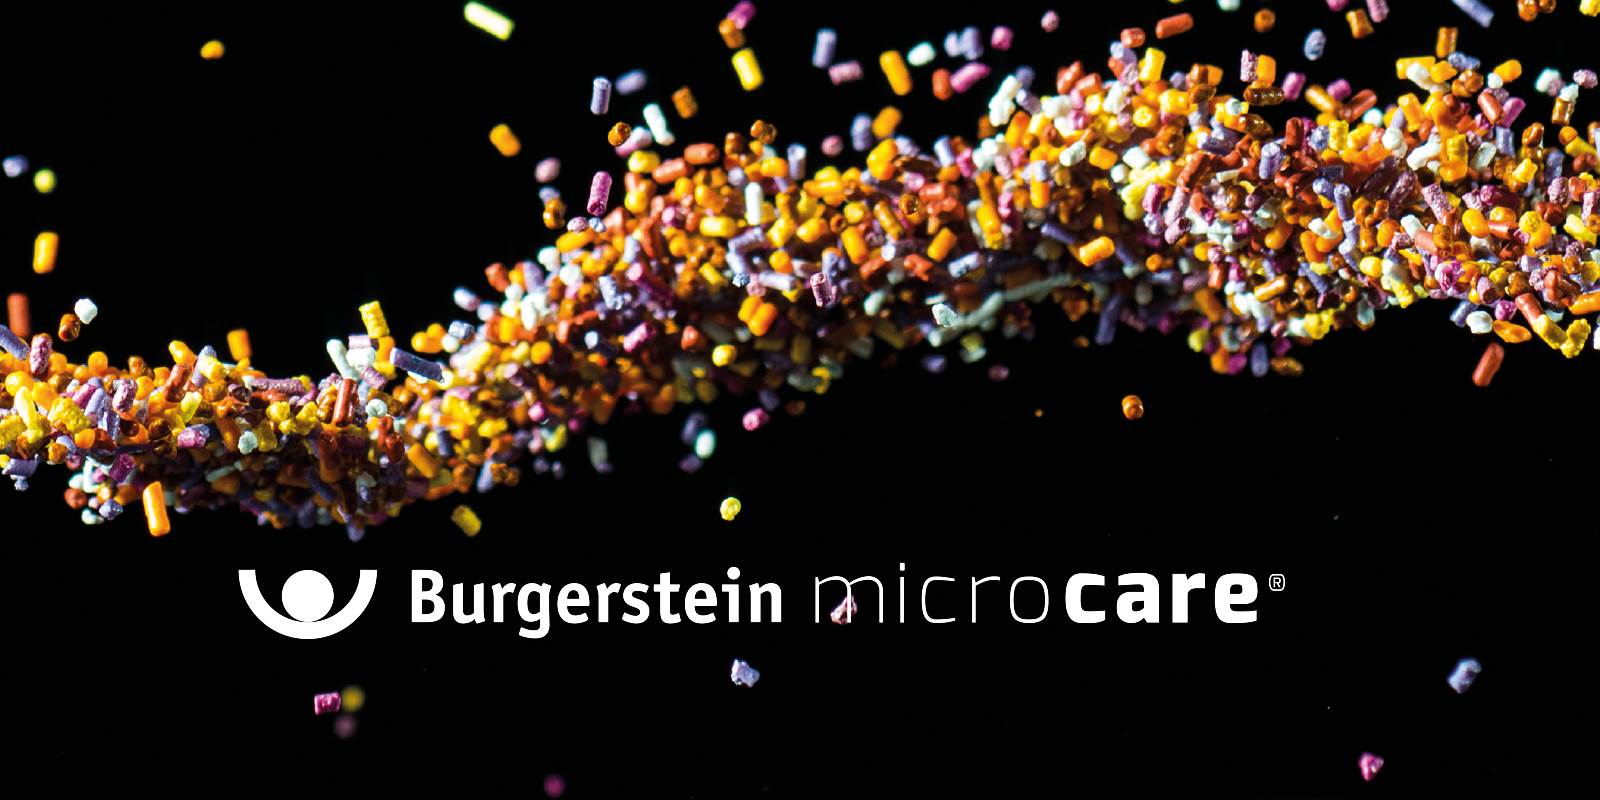 Burgerstein Microcare